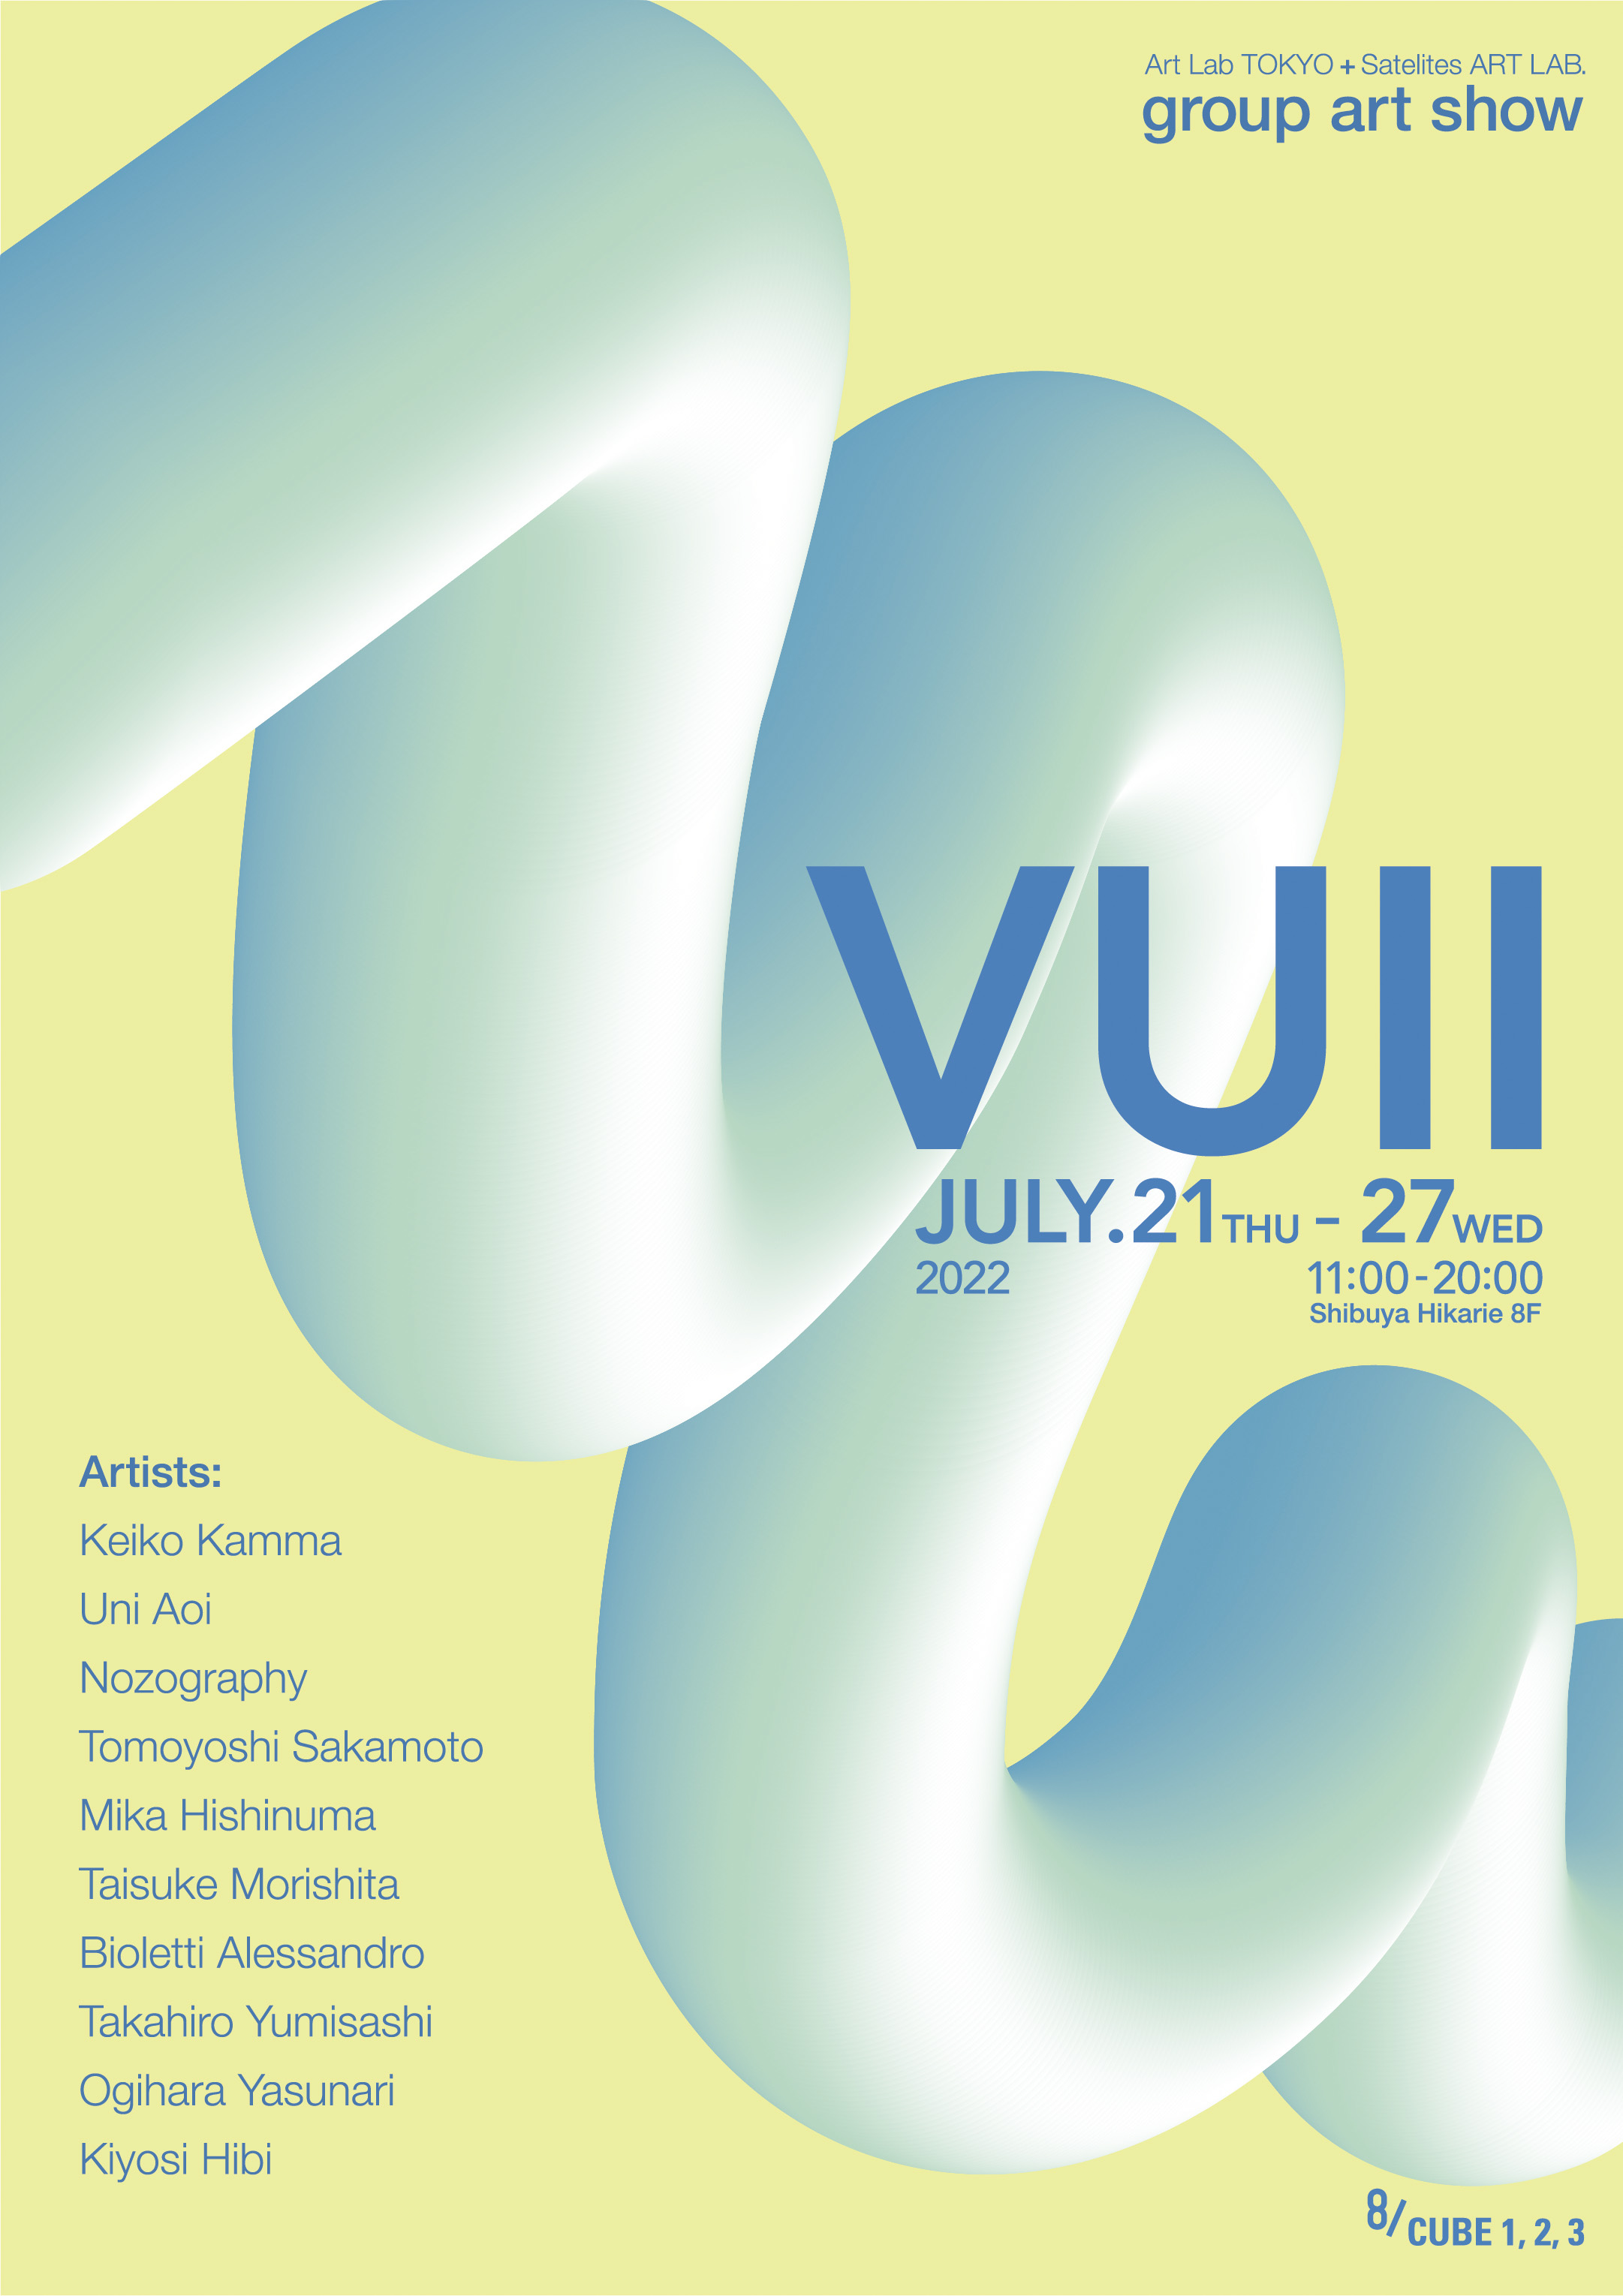 渋谷ヒカリエ8F 8/CUBE1,2,3にてサテライツアートラボとアートラボトーキョーによるグループ展「VU2」(ヴー2)のポスター